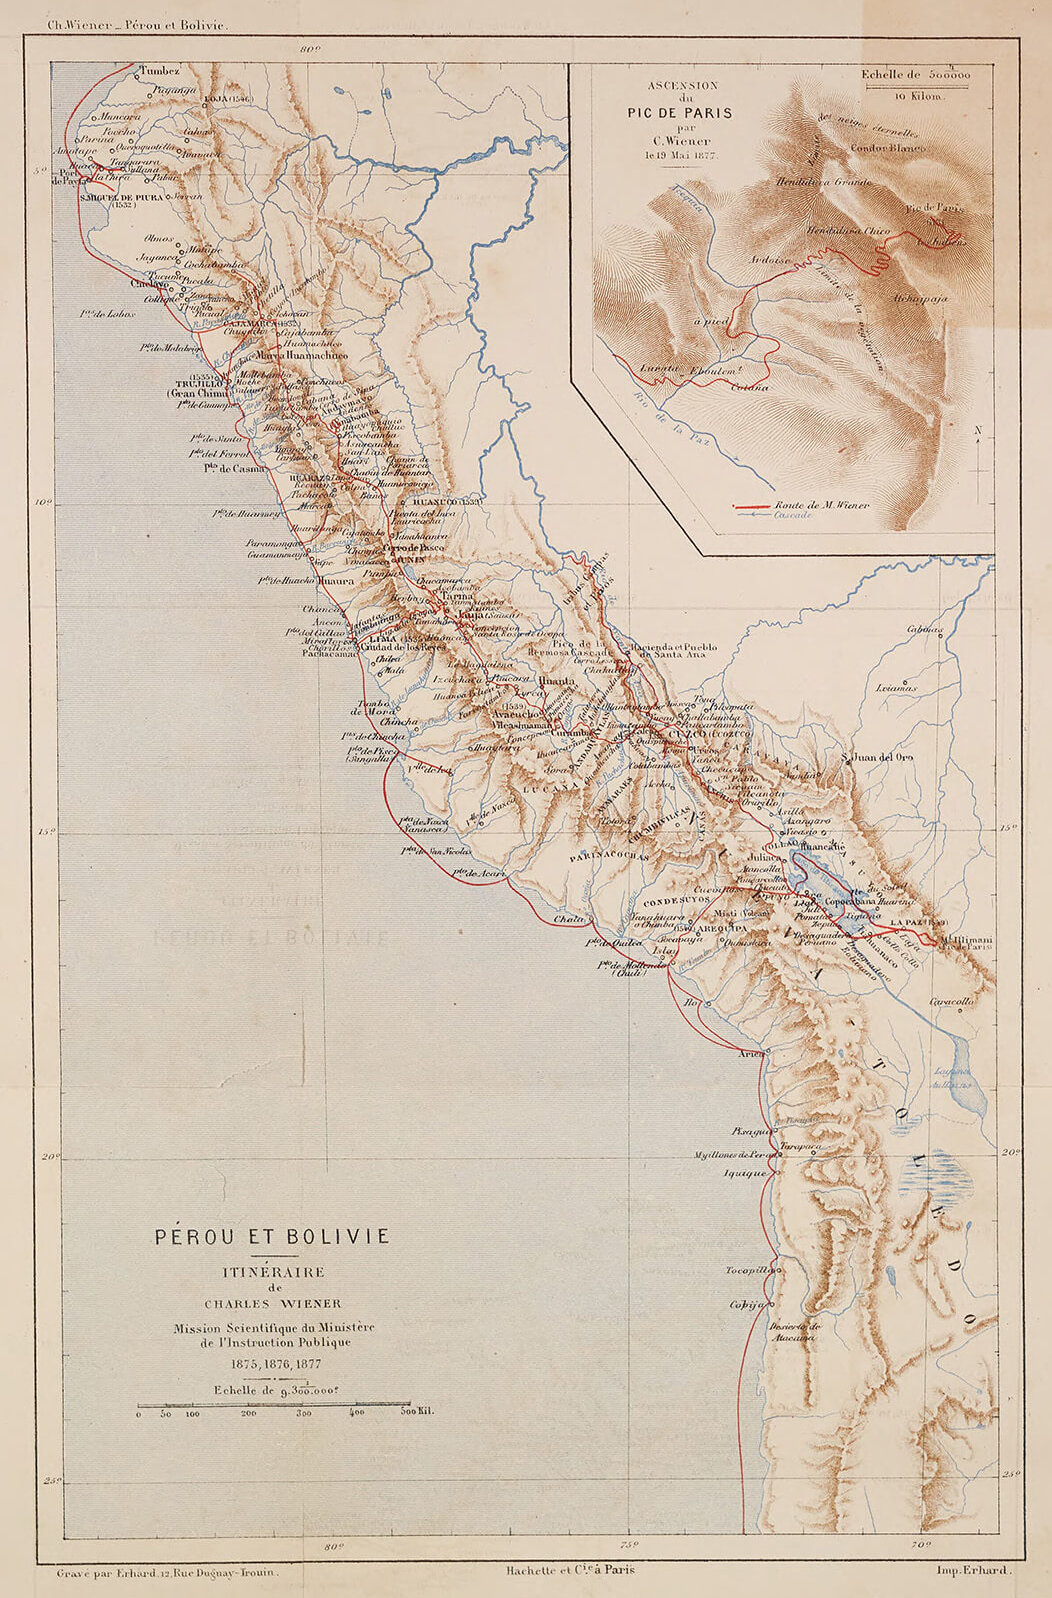 Karte des Reiseverlaufes, aus dem Buch „Péru et Bolivie", Quelle: ÖNB 